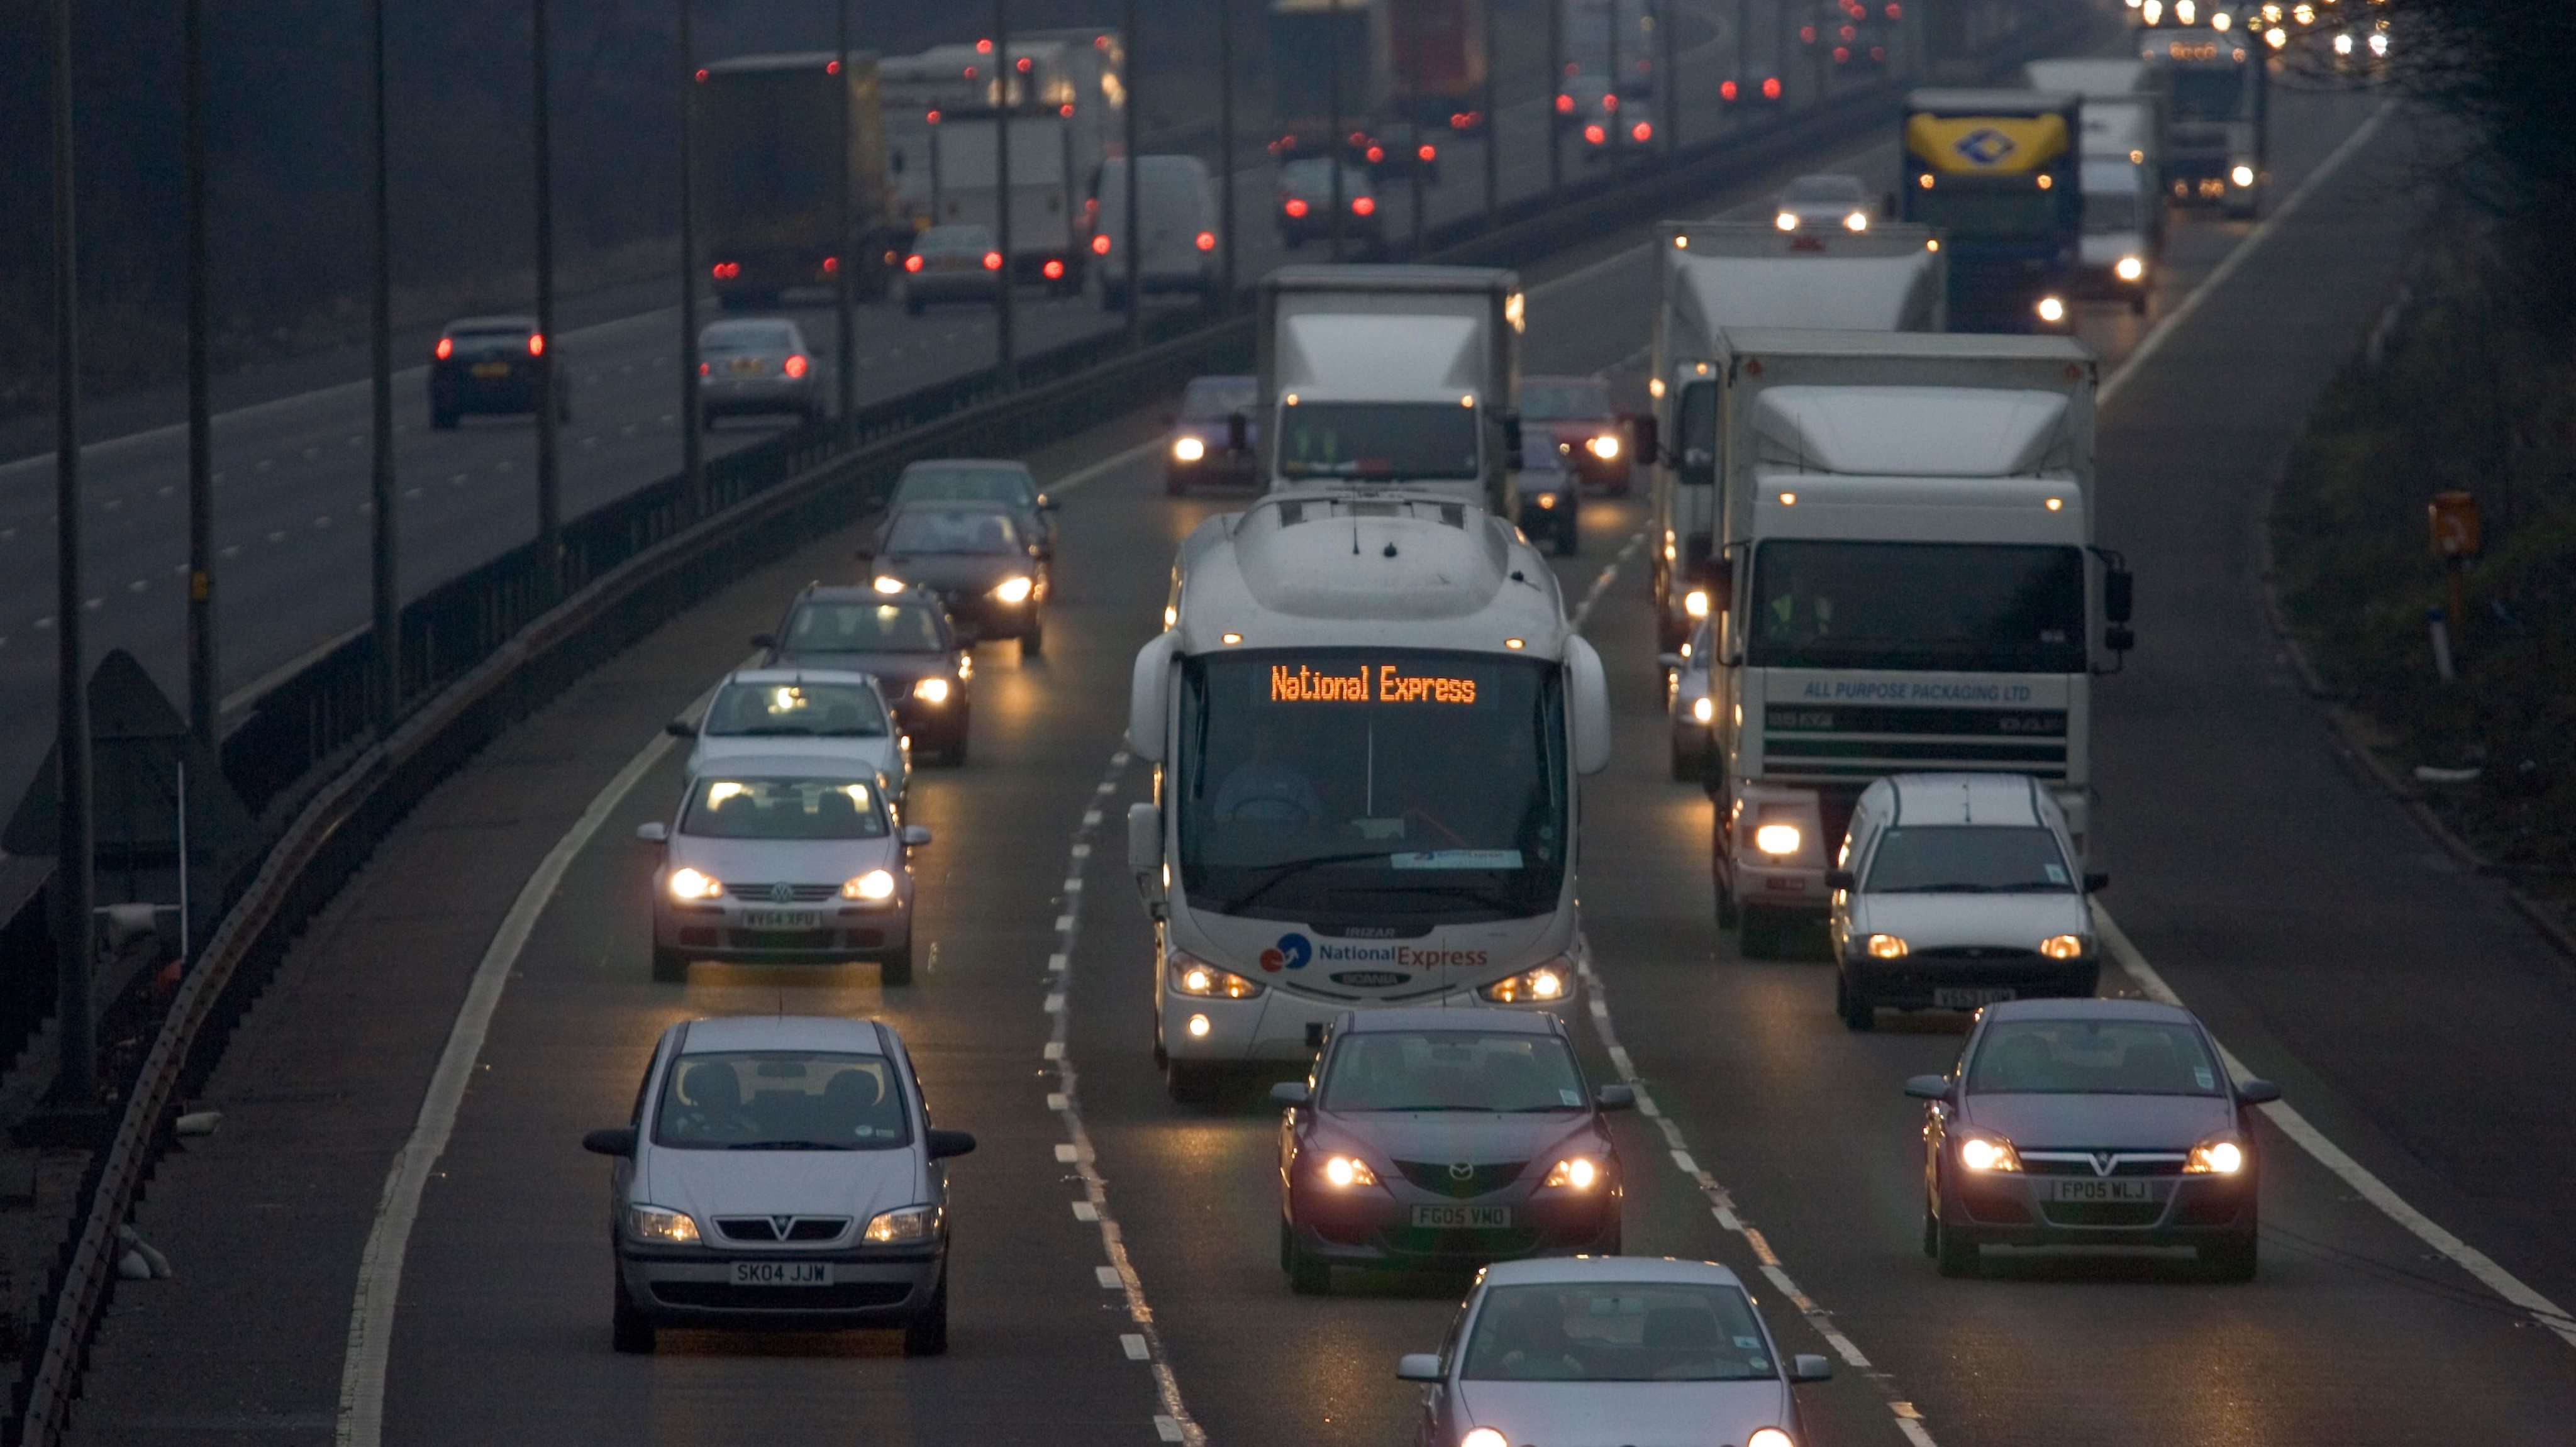 Traffic On M1 Motorway, England, UK